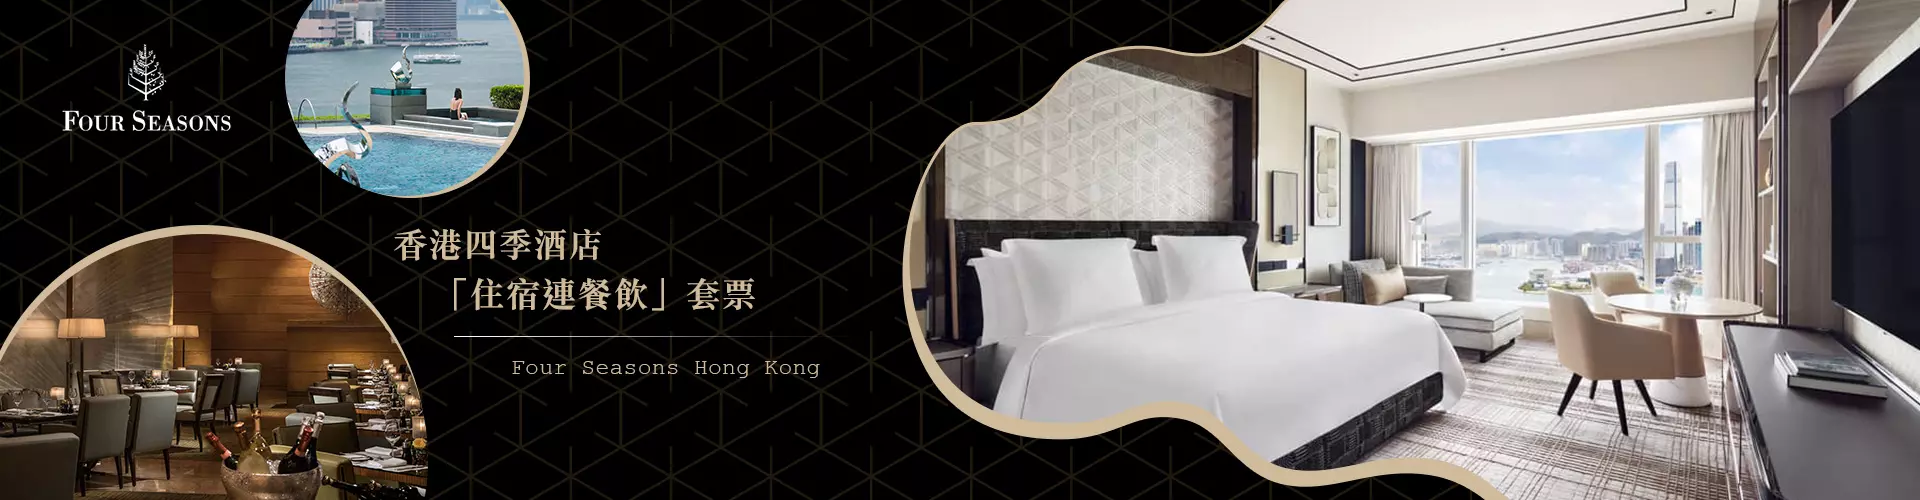 【節慶閃亮之旅】四季酒店 Four Seasons Hotel Hong Kong｜頂級住宿連早餐優惠